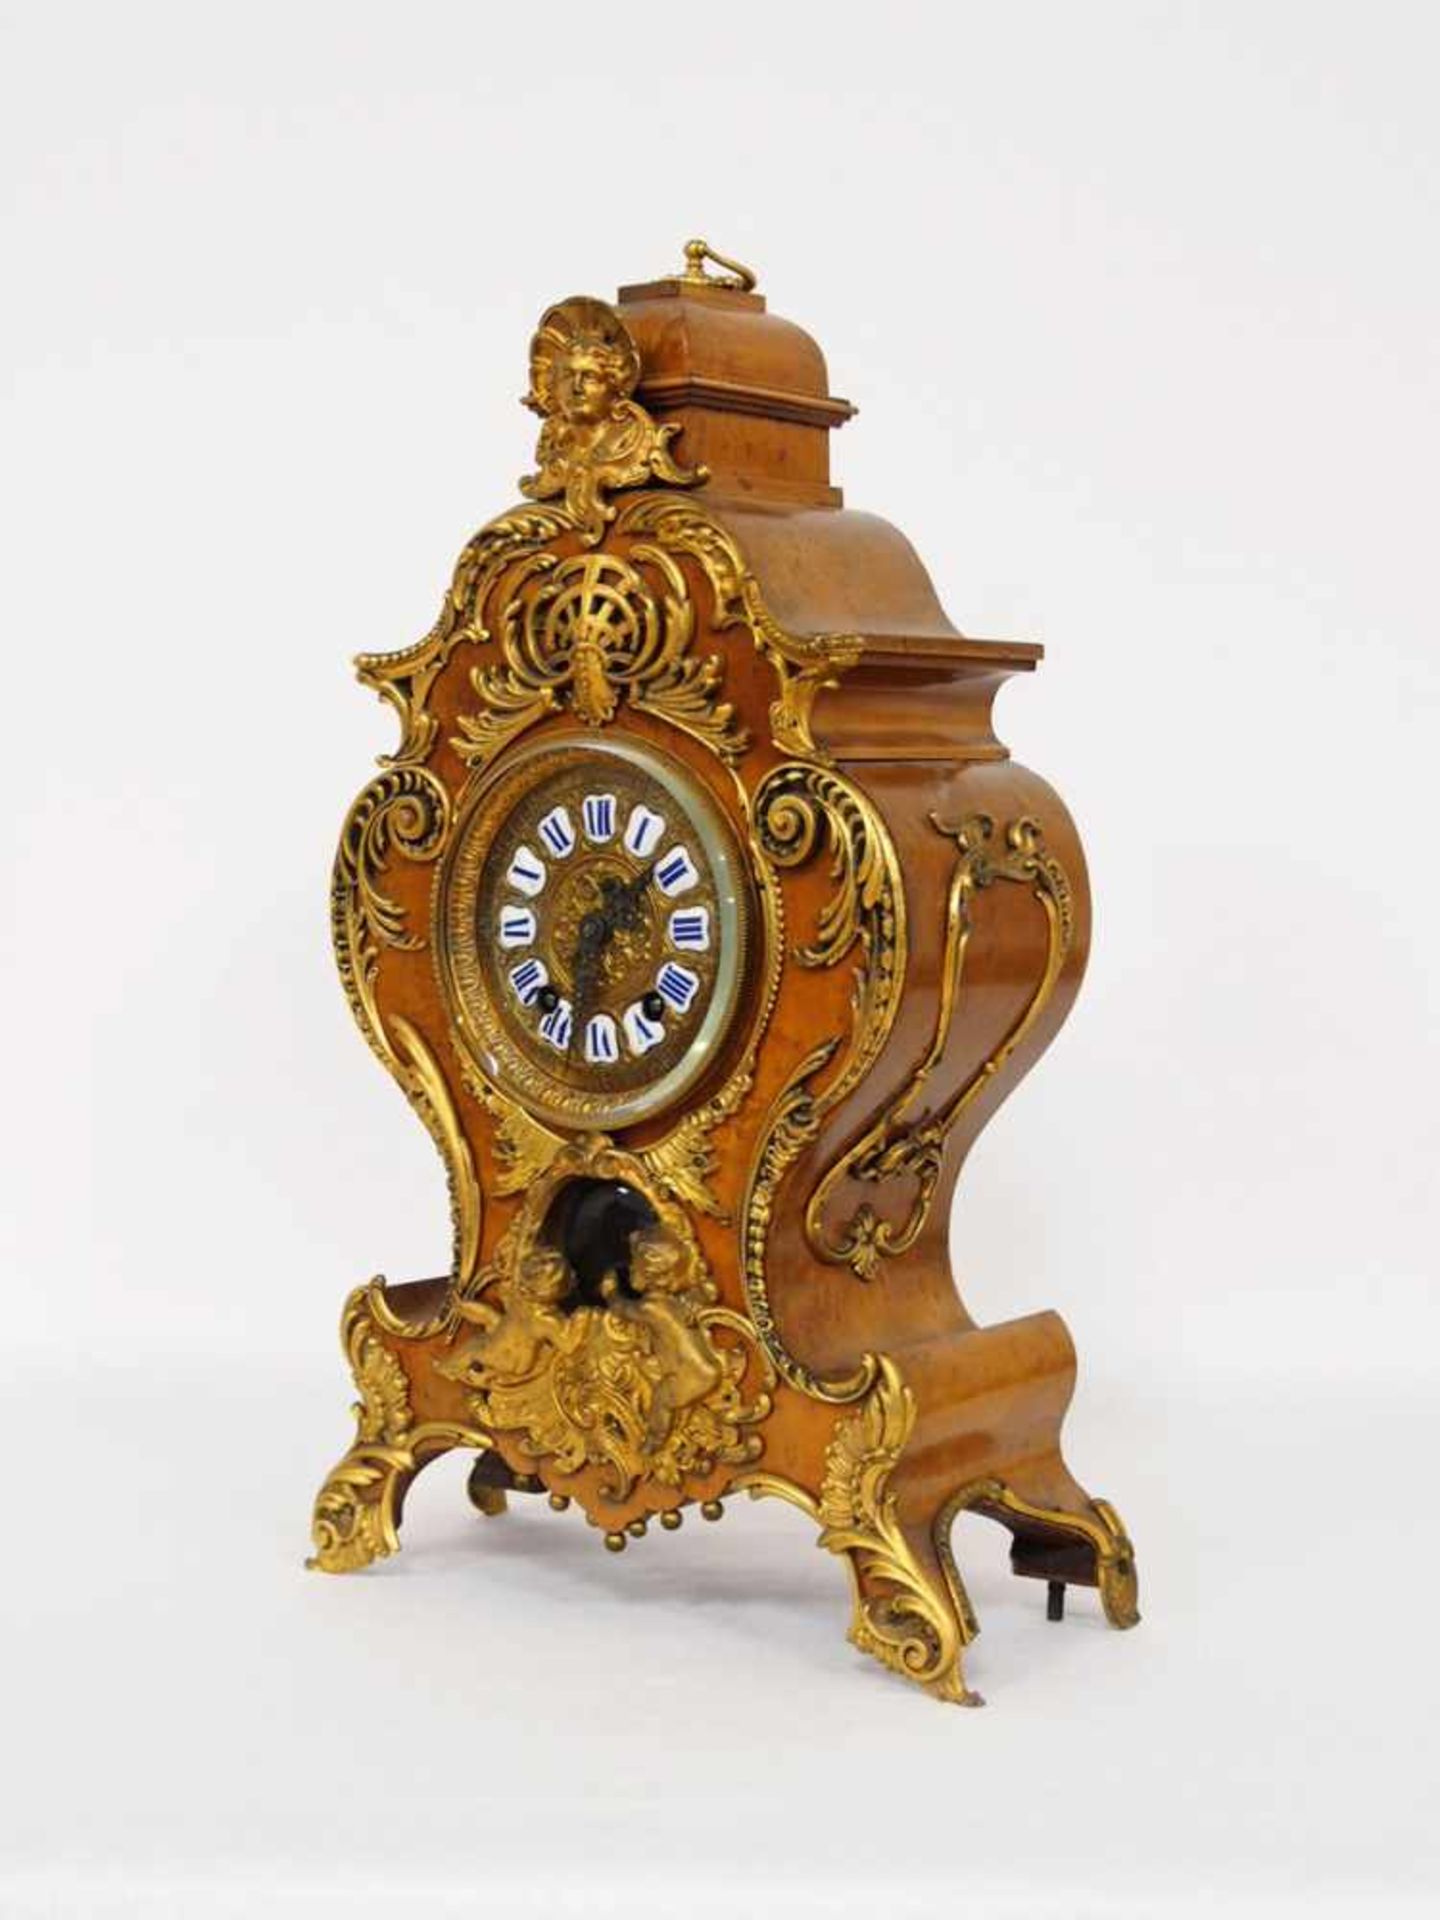 Pendule im Stil Louis XVIGehäuse, Holz, Messingbeschläge, Zifferblatt, Bronze, vergoldet, mit - Bild 2 aus 2